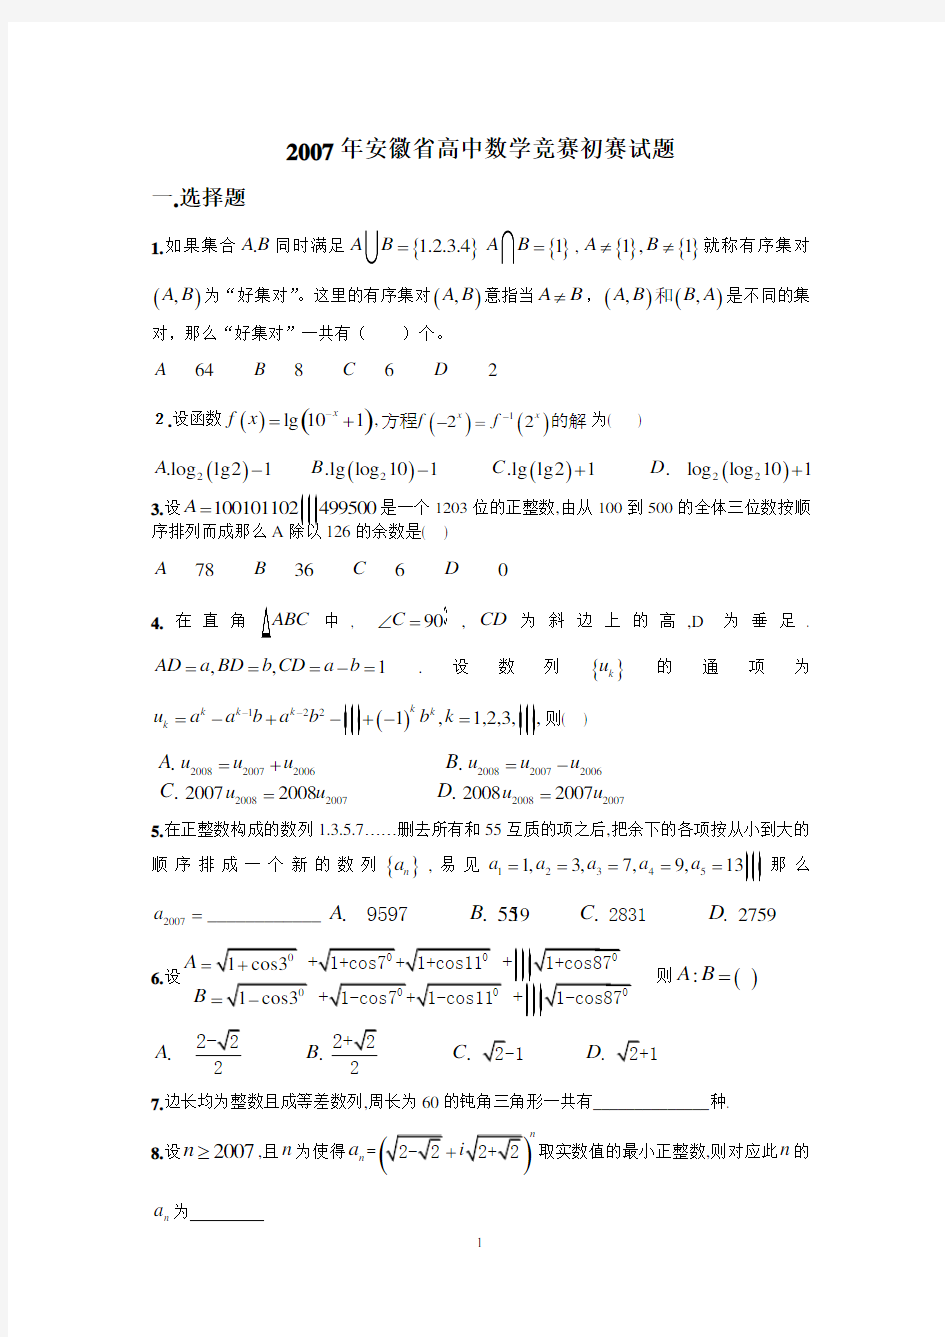 2007-2016年安徽省高中数学竞赛初赛试题及答案详解